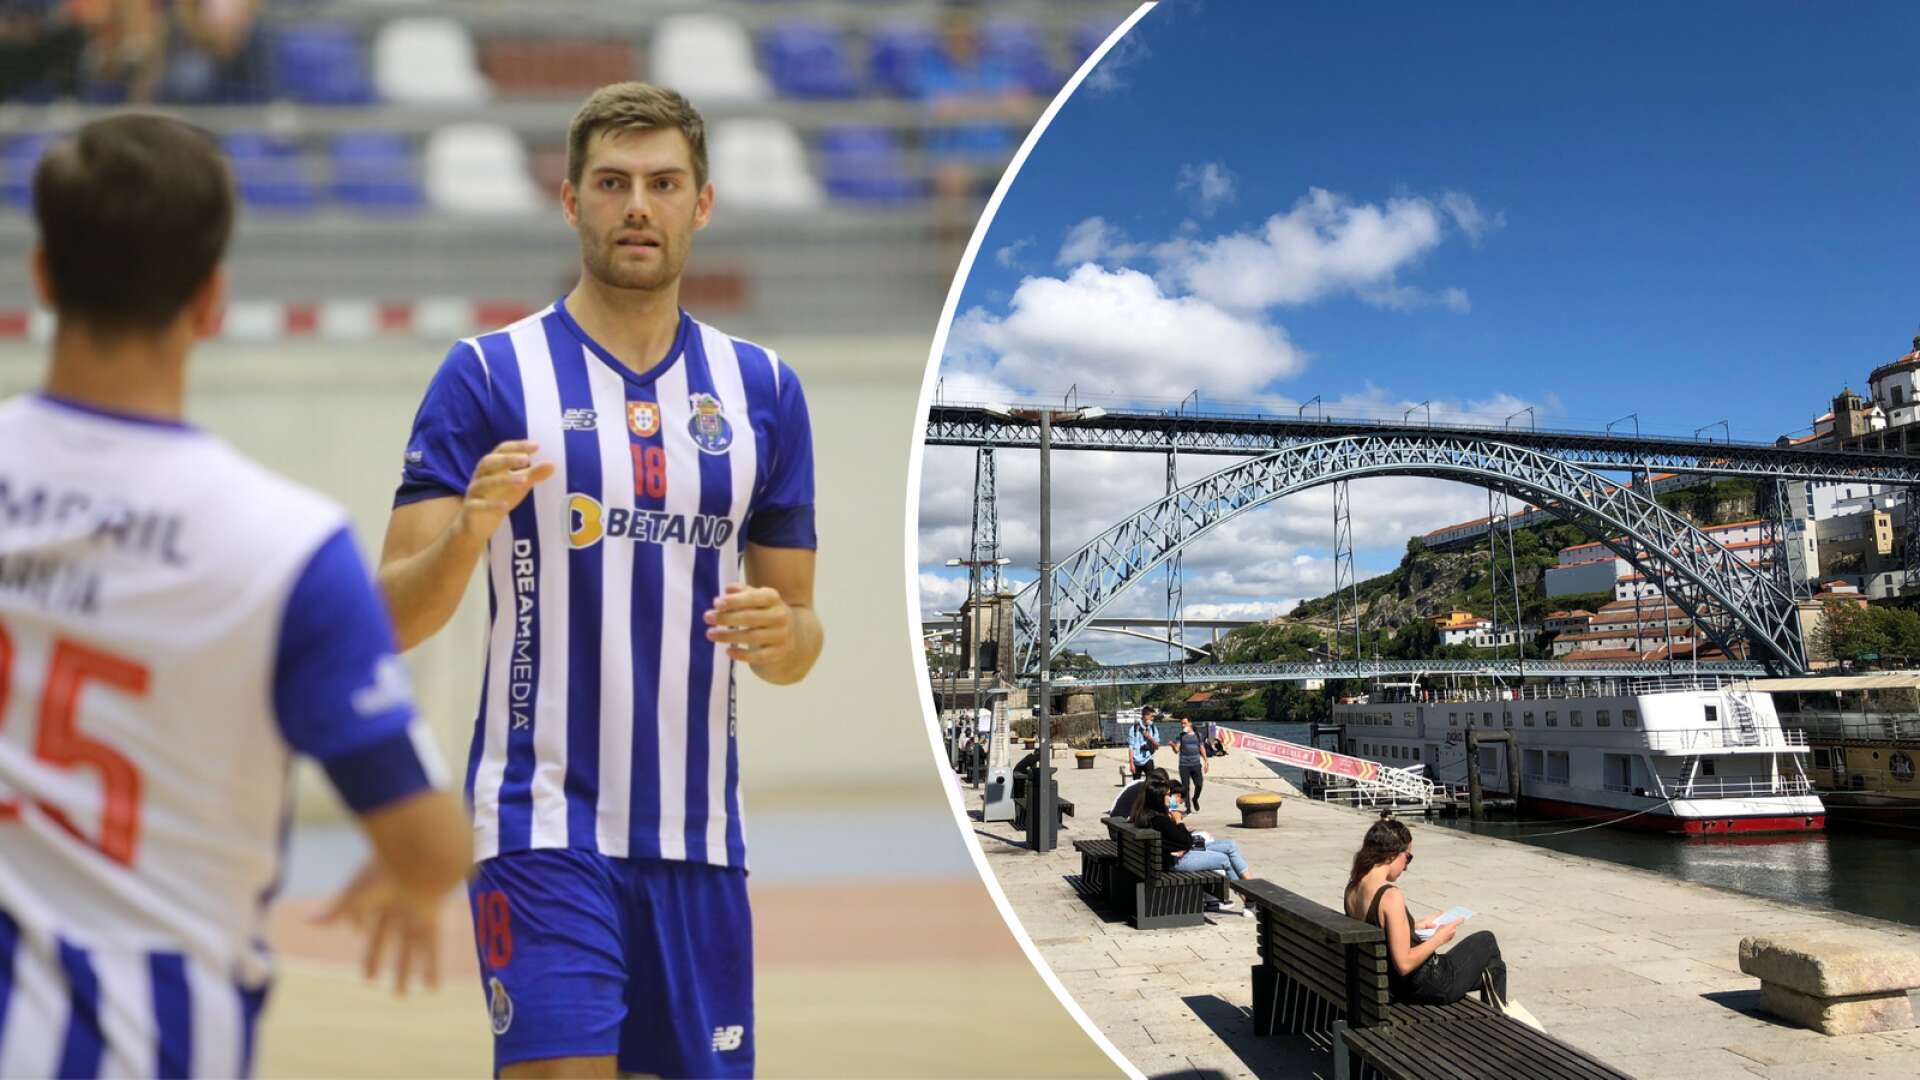 Tidigare IFK Skövde-spelaren Jack Thurin trivs med livet som proffs i FC Porto i Portugal. Till höger syns Portos landmärke, bron Ponte Dom Luís I, där floden Douro rinner under.